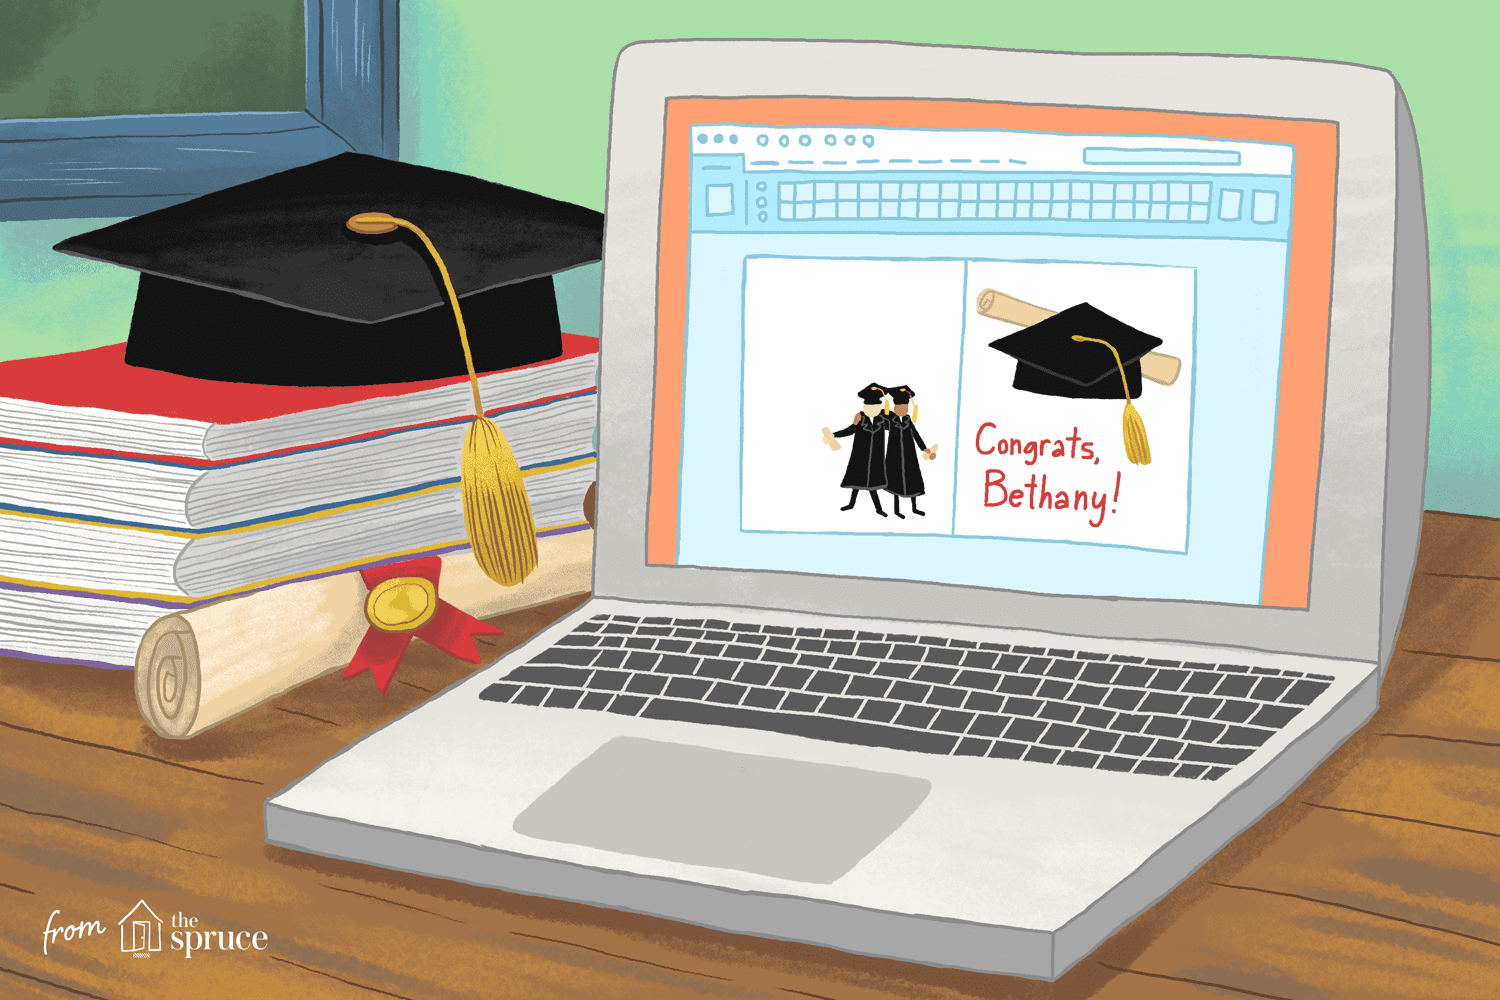 笔记本电脑随着毕业剪贴画在屏幕上旁边的书,一顶帽子和一个文凭。